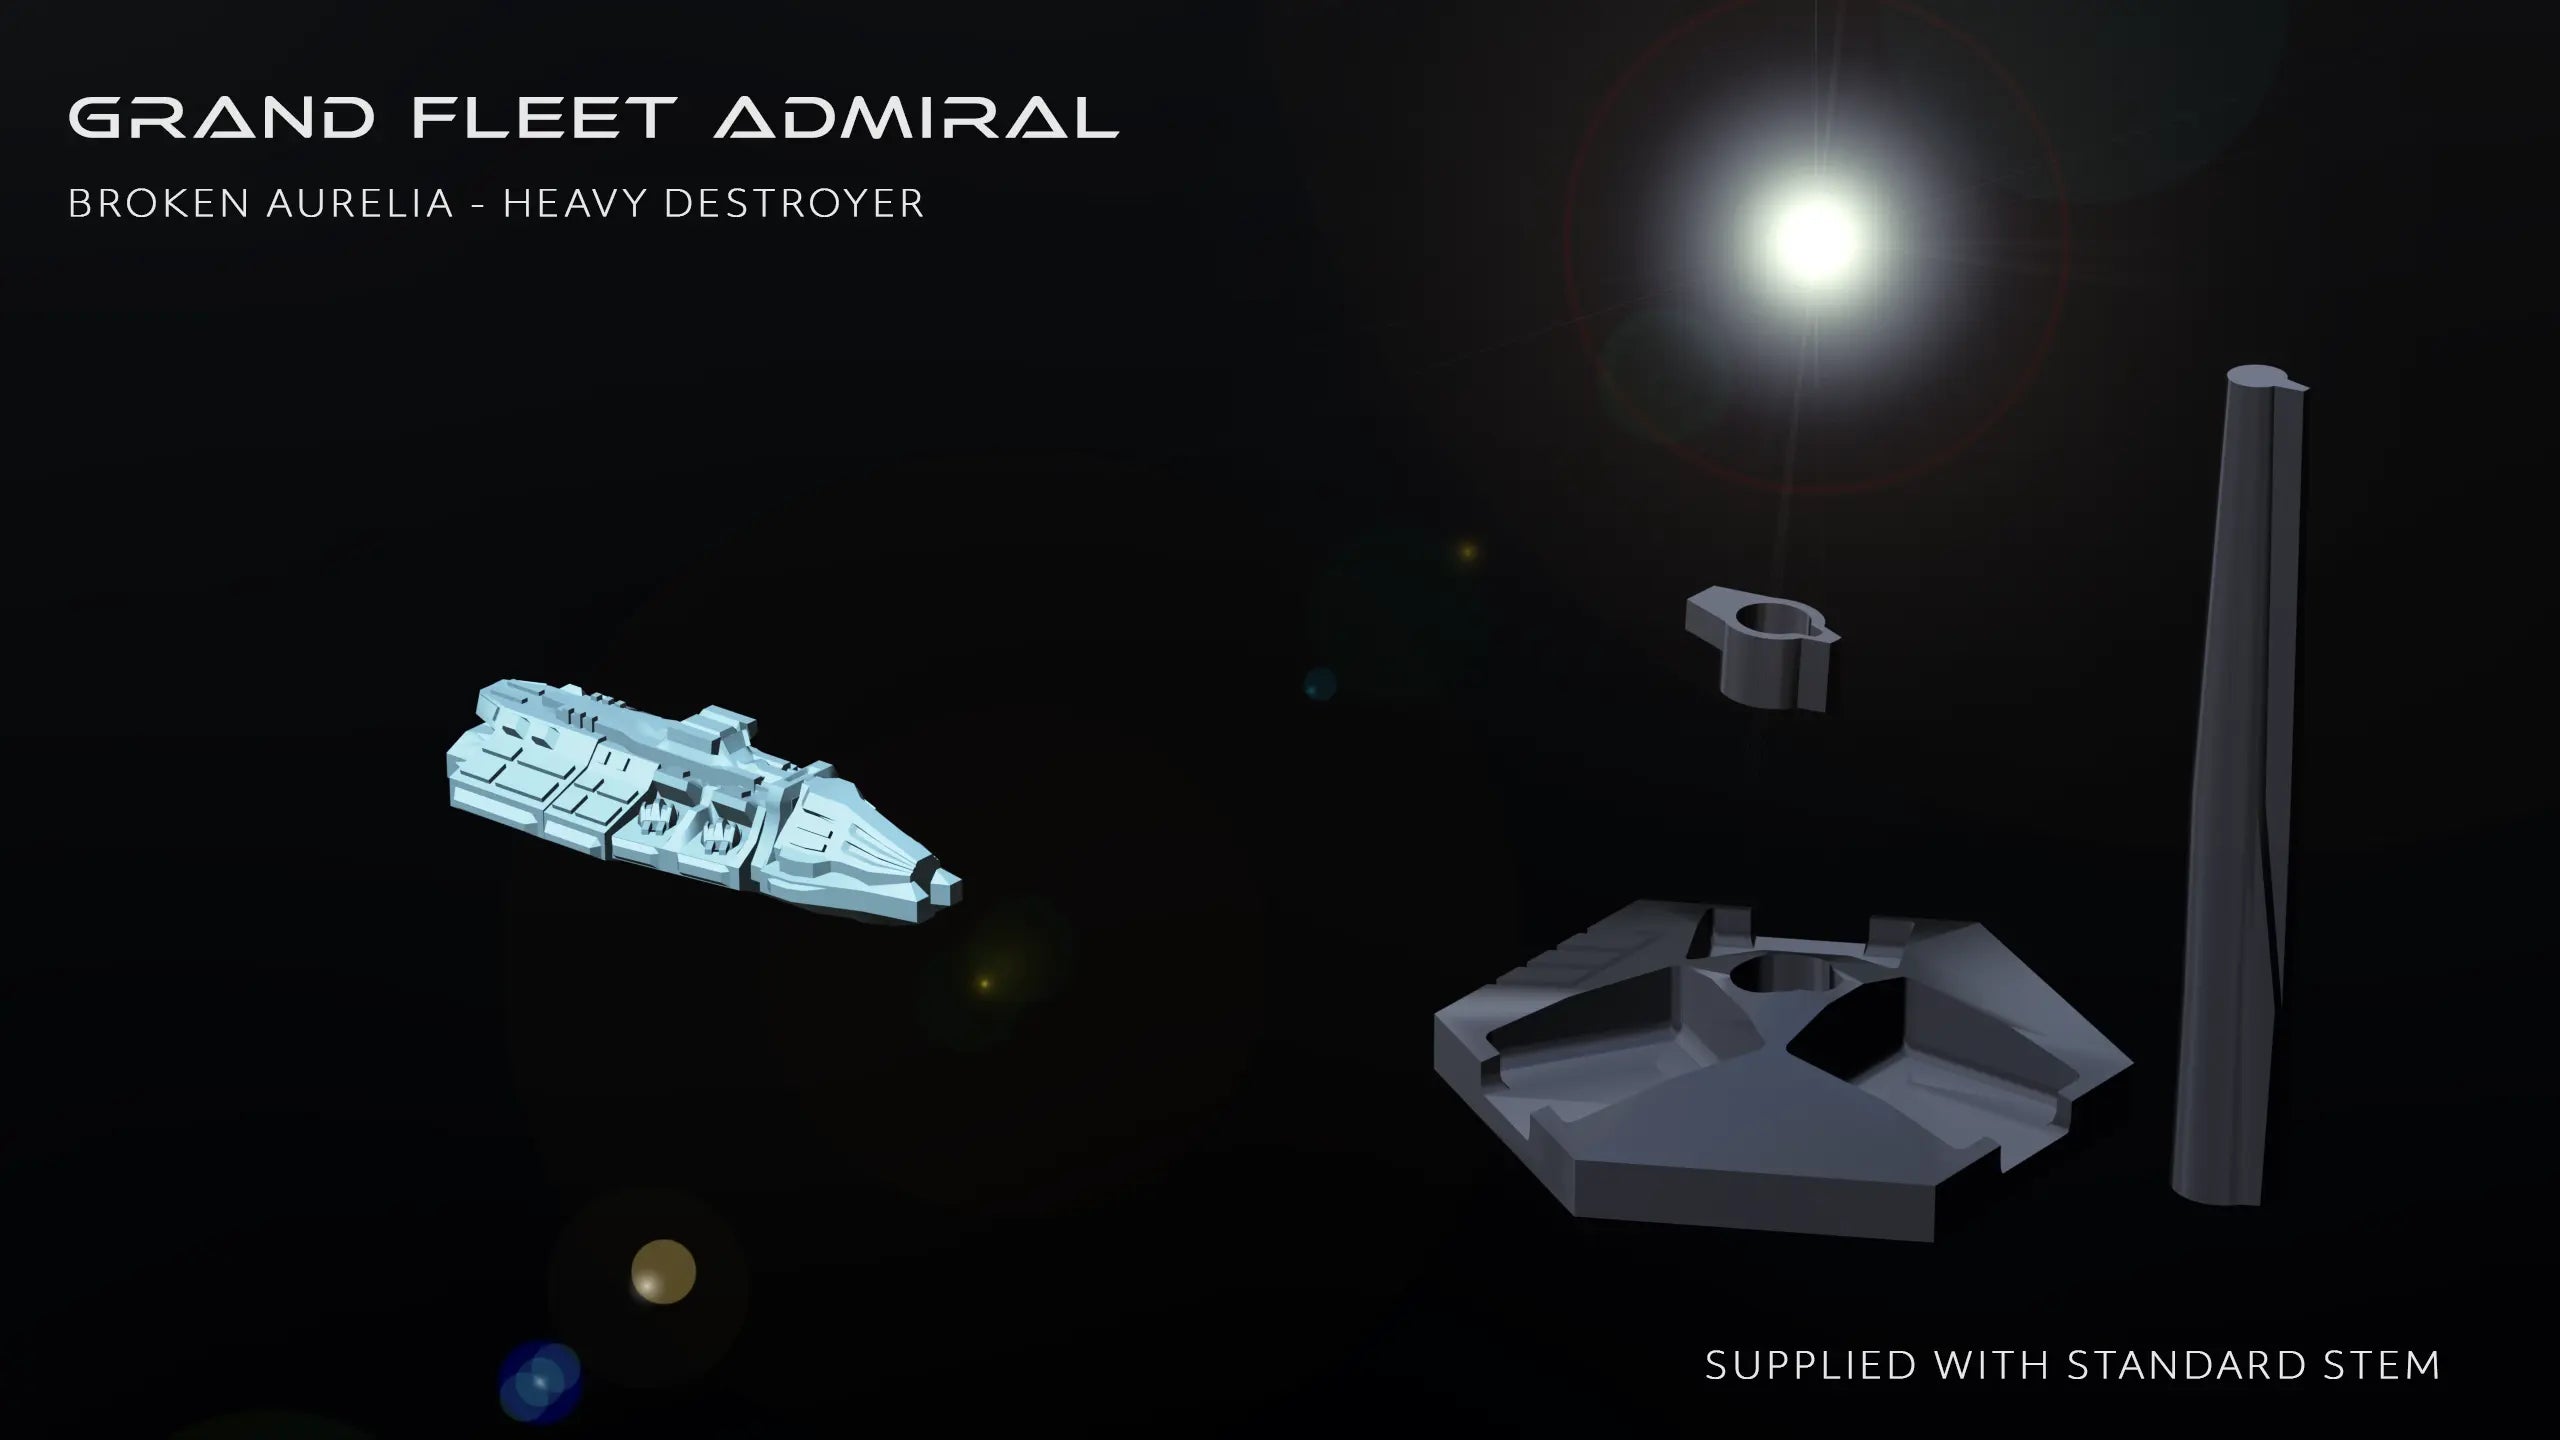 Imperial Hemina - Heavy Destroyer Grand Fleet Admiral